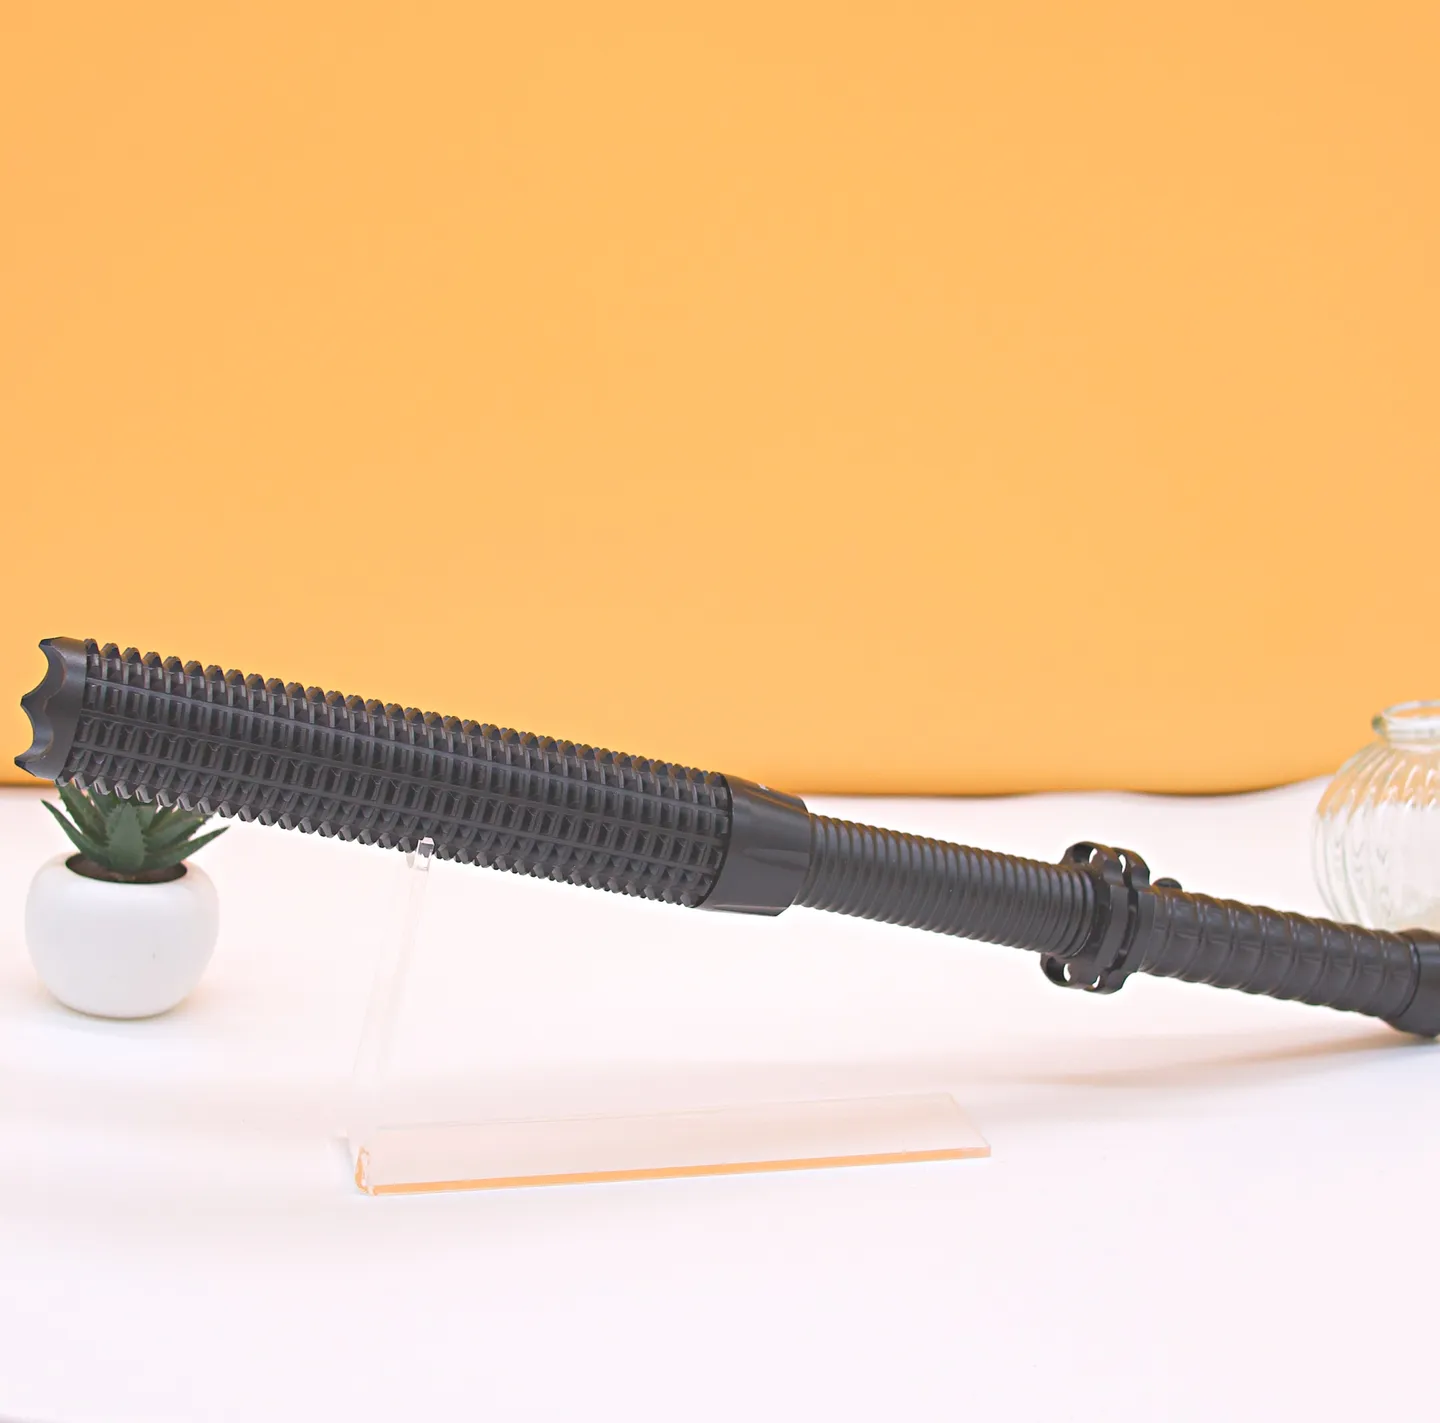 Schlagstöcke & Knüppel - Teleskopabwehrschlagstock aus eloxiertem Aluminium, 46 cm